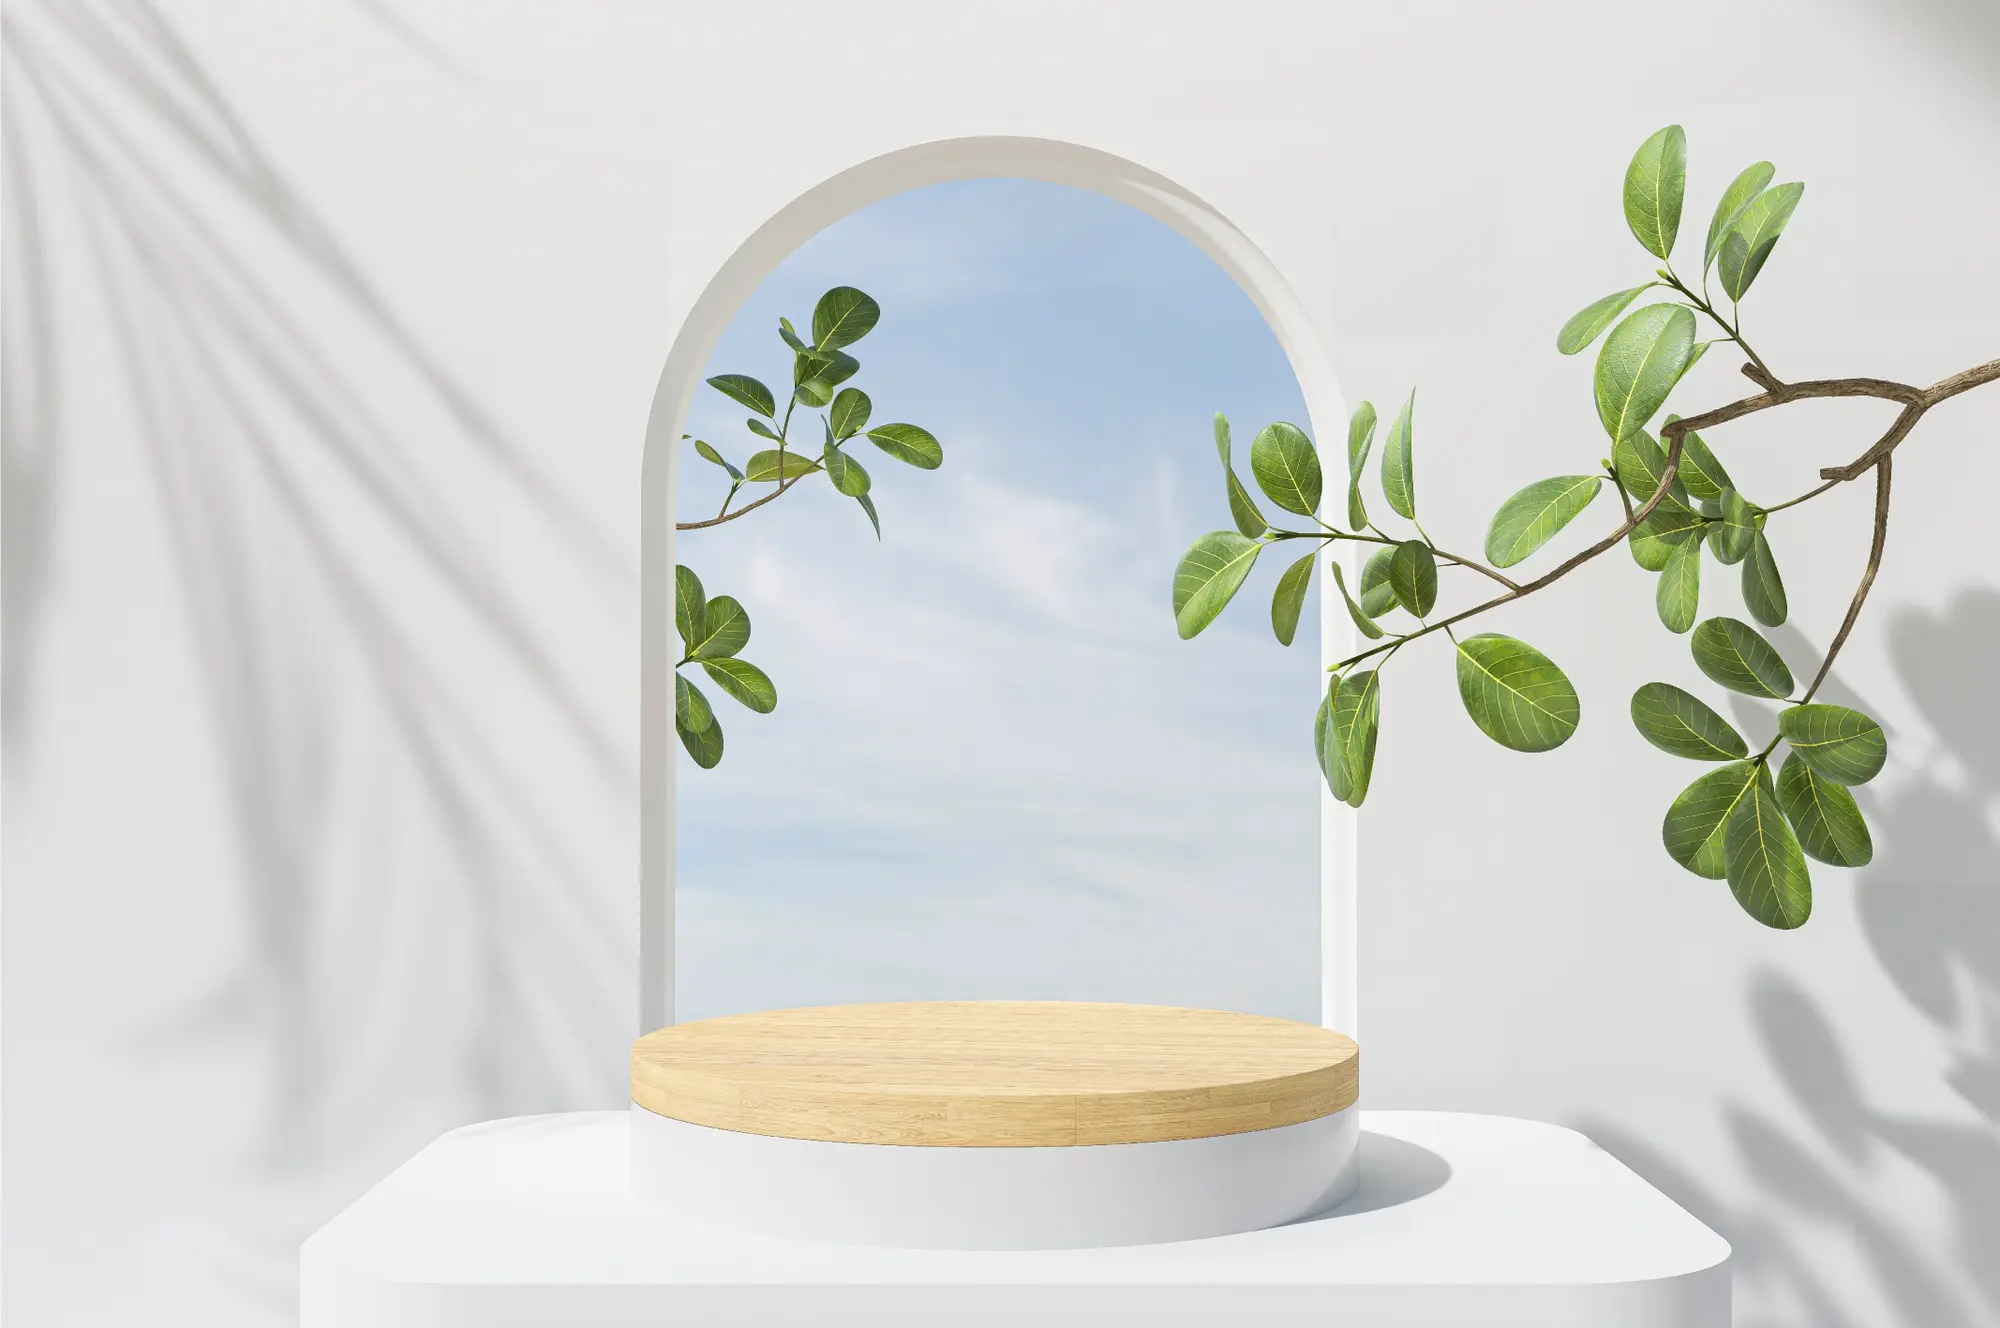 Cena 3D, uma janela ao fundo mostra um céu, em primeiro plano há uma planta e uma base de madeira